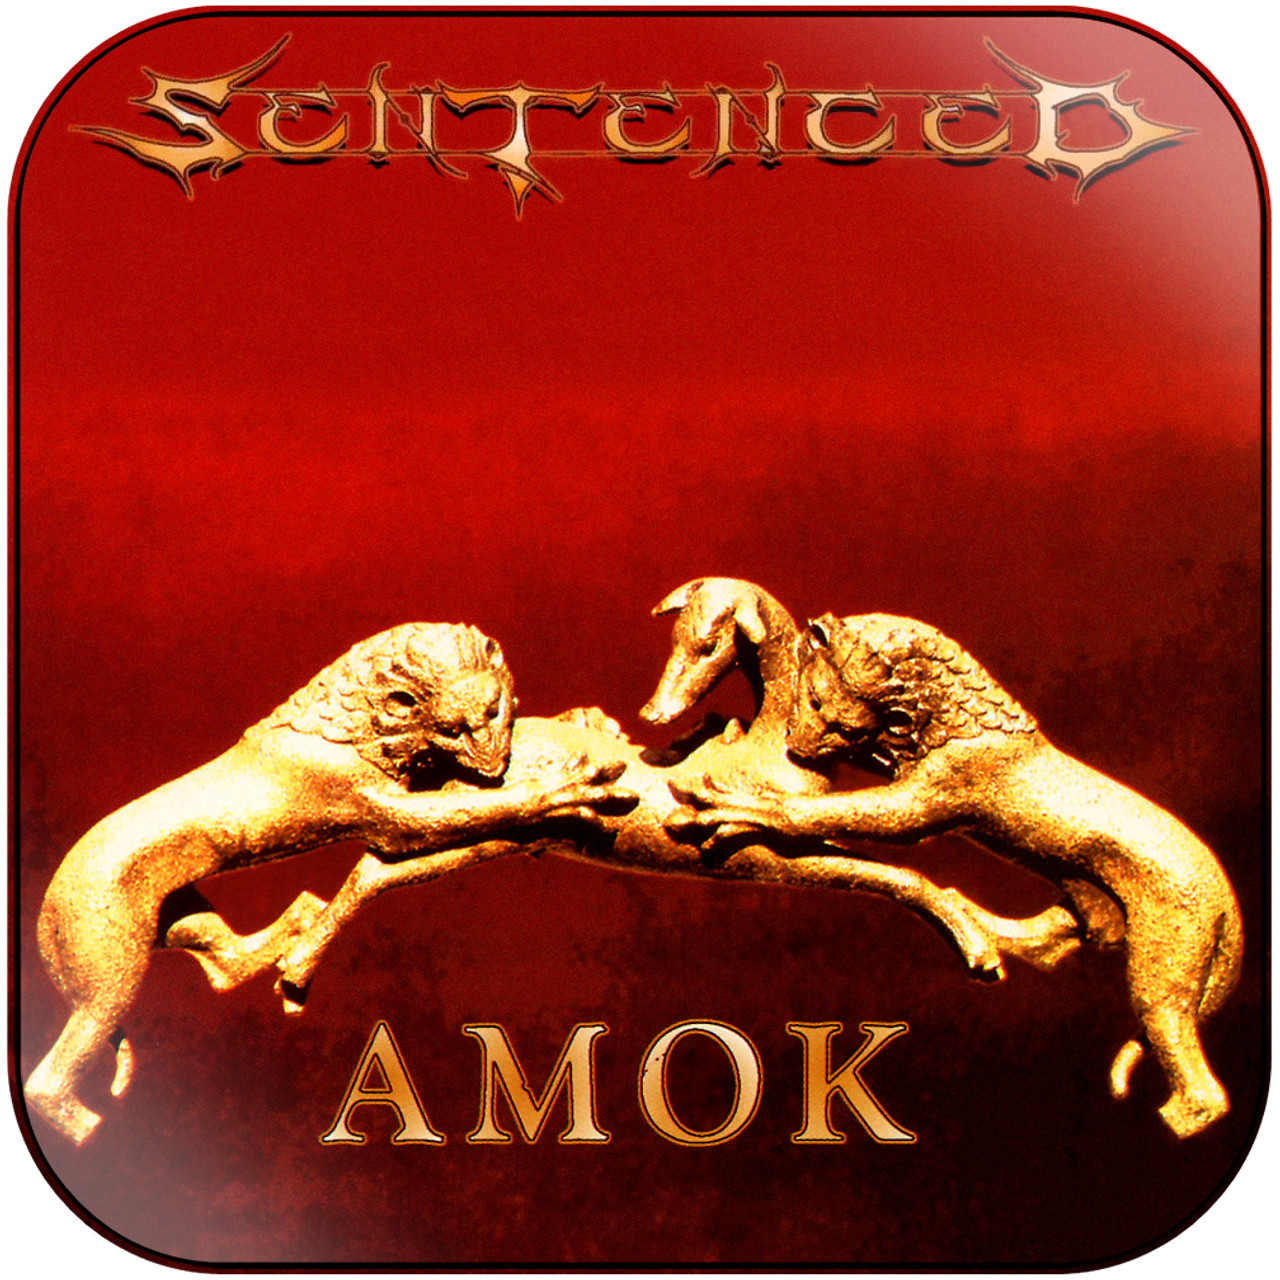 Sentenced - Amok Album Cover Sticker